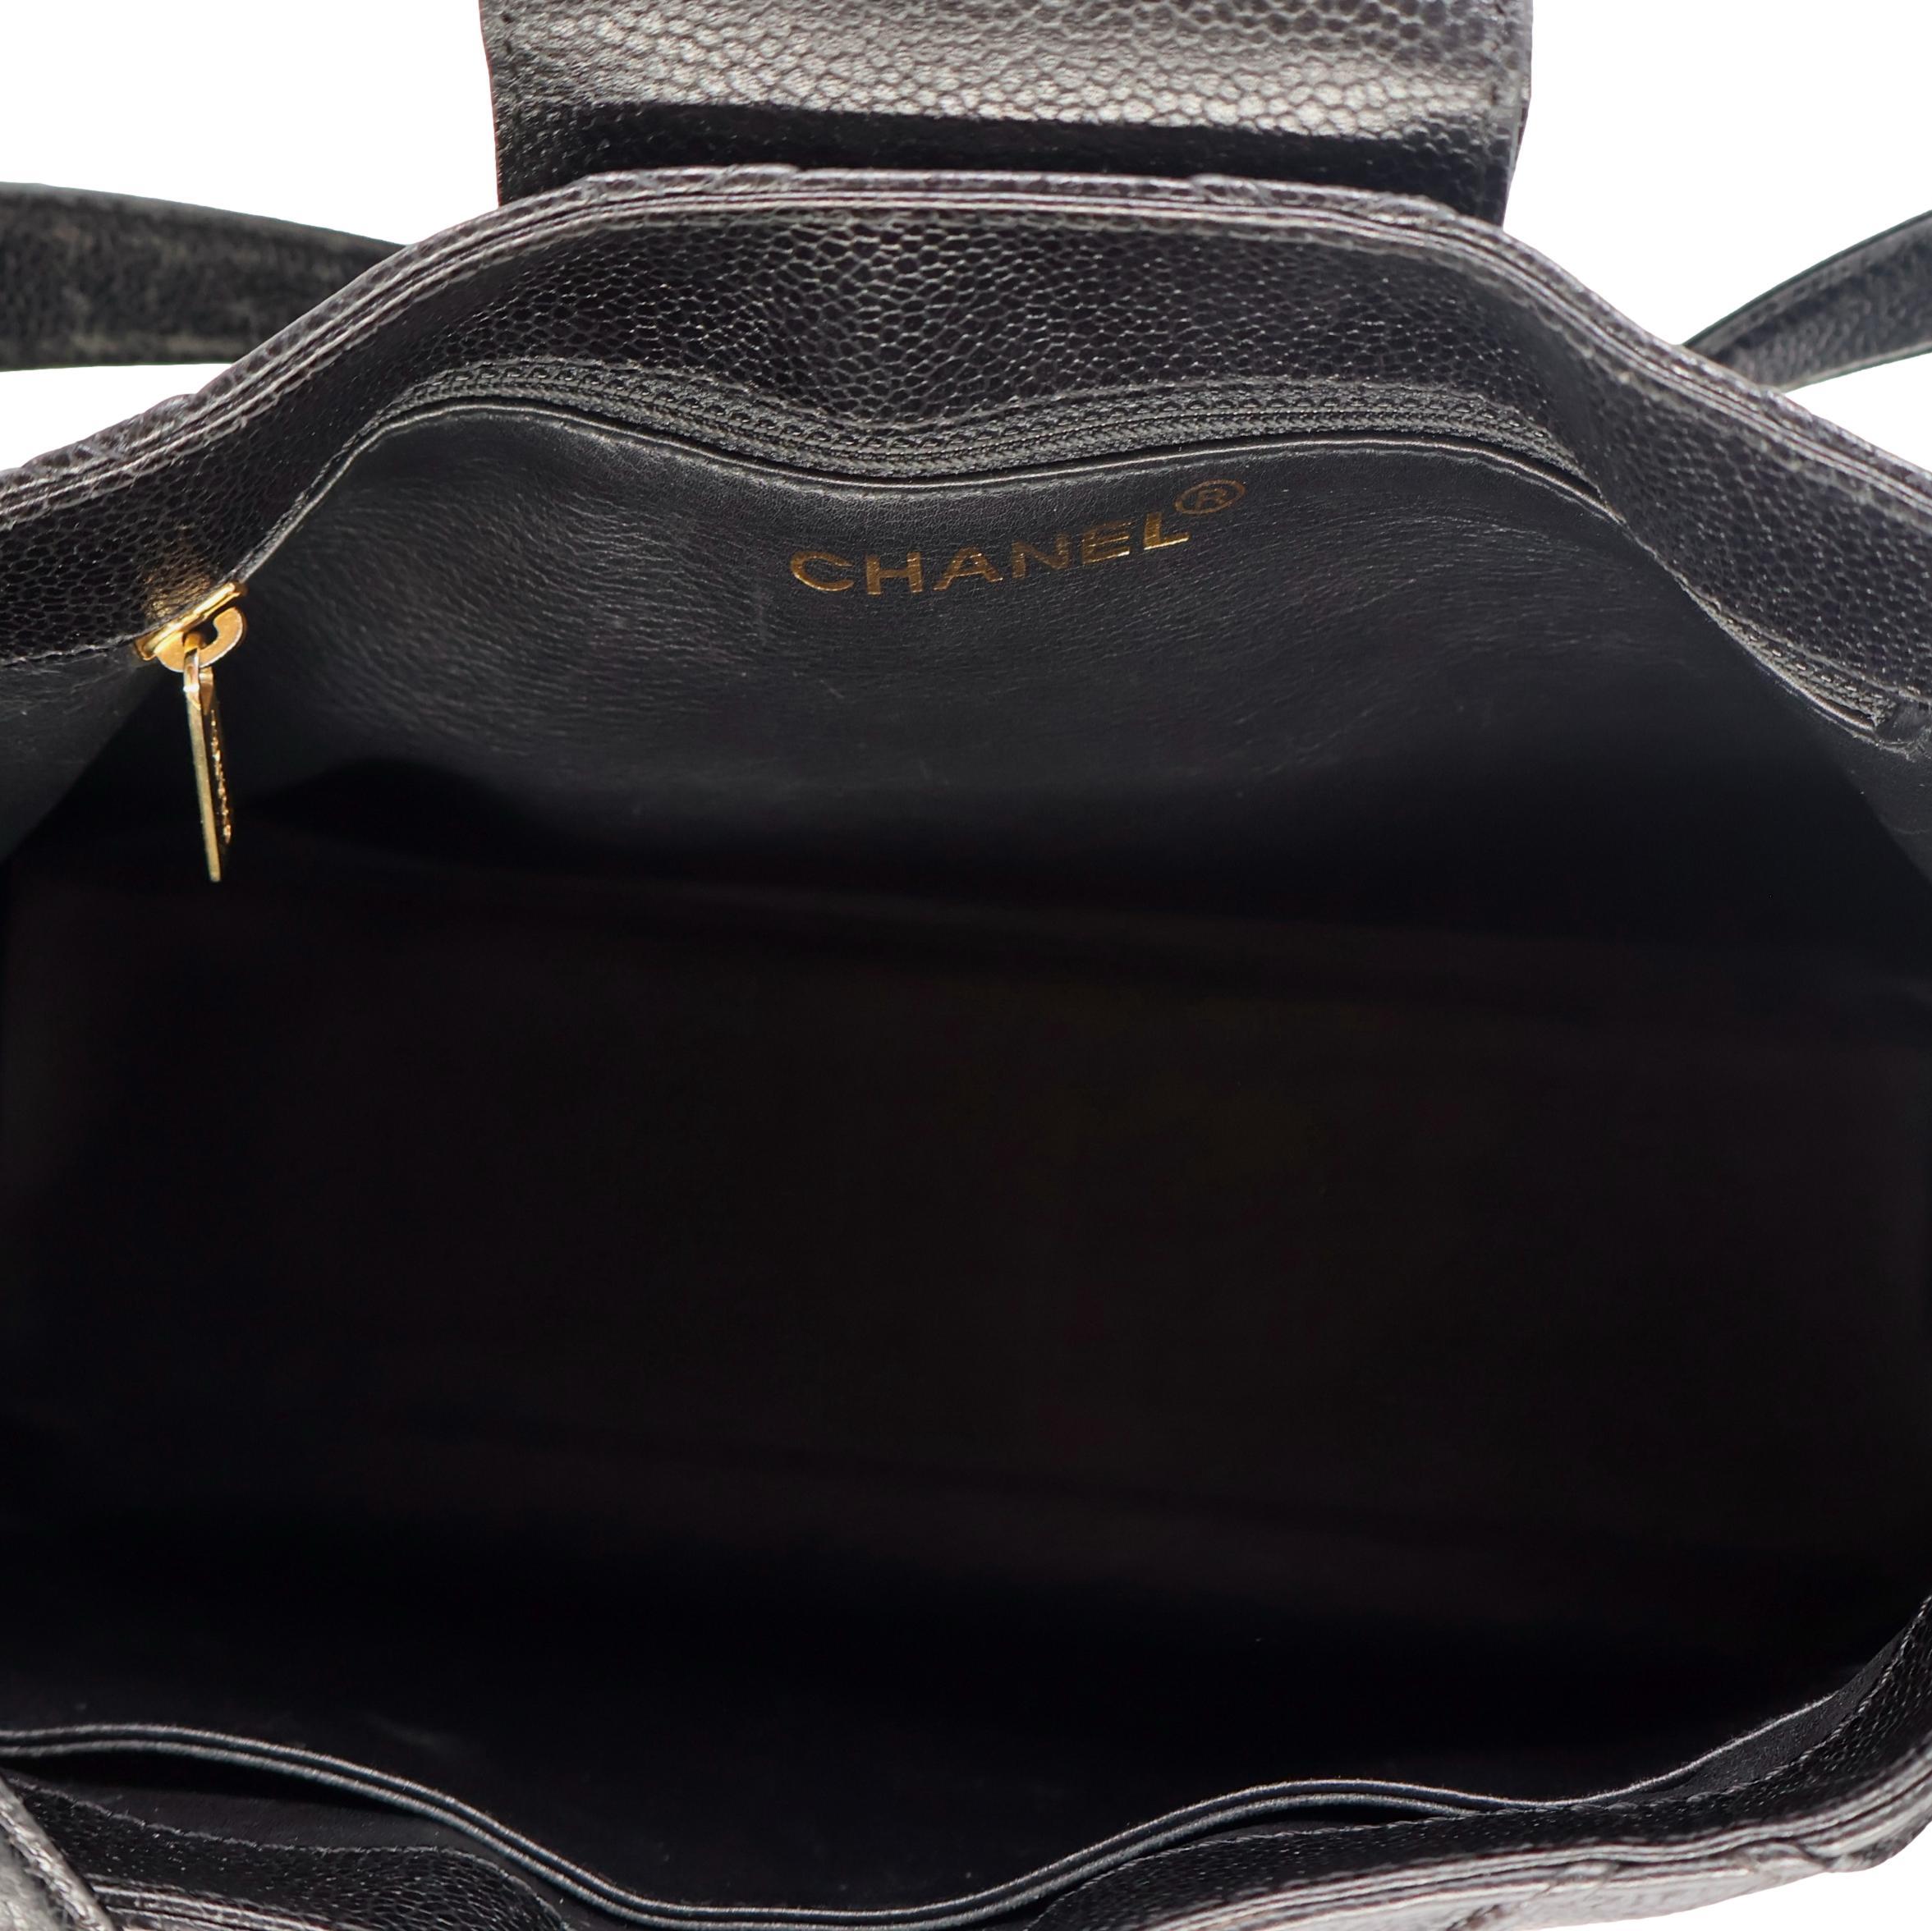 Chanel Vintage Black Reverse Quilted Caviar Leather Shoulder Bag, 1996 - 1997. For Sale 6